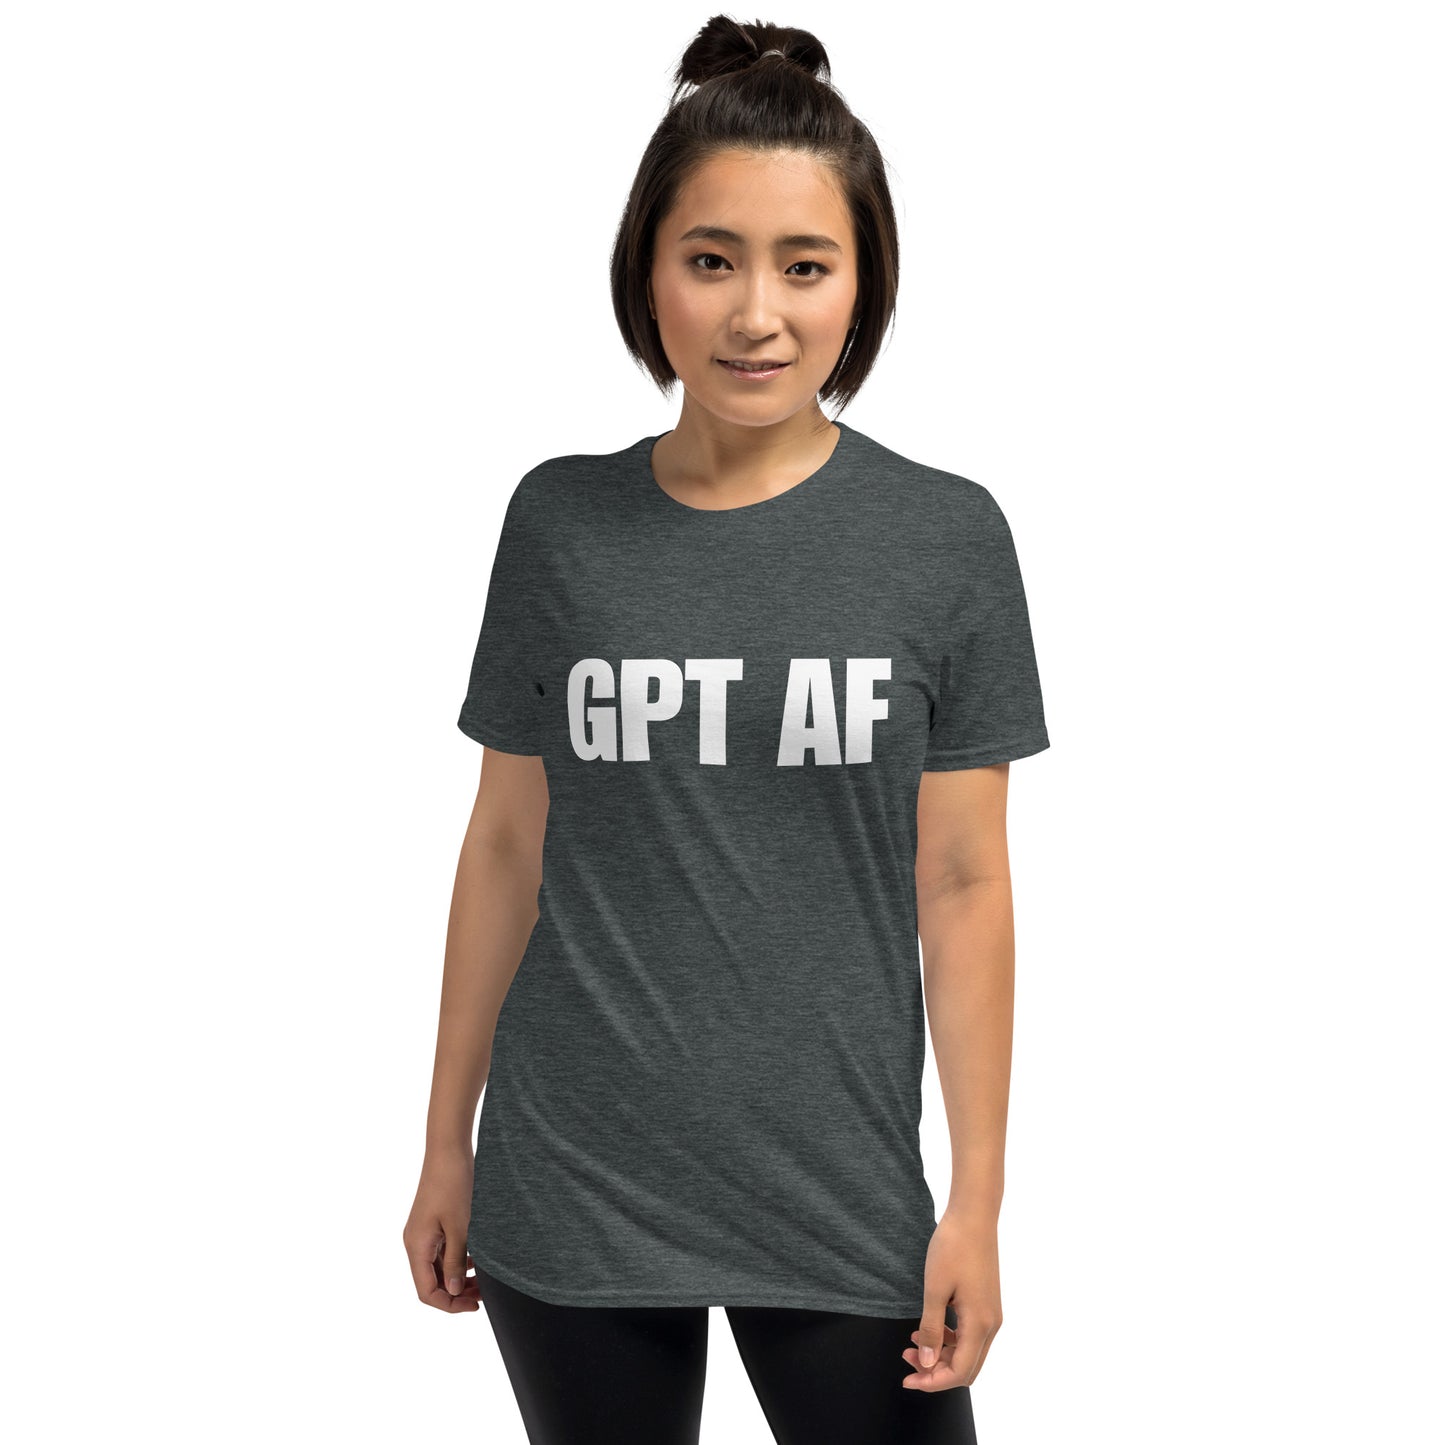 GPT AF - Short-Sleeve Unisex T-Shirt